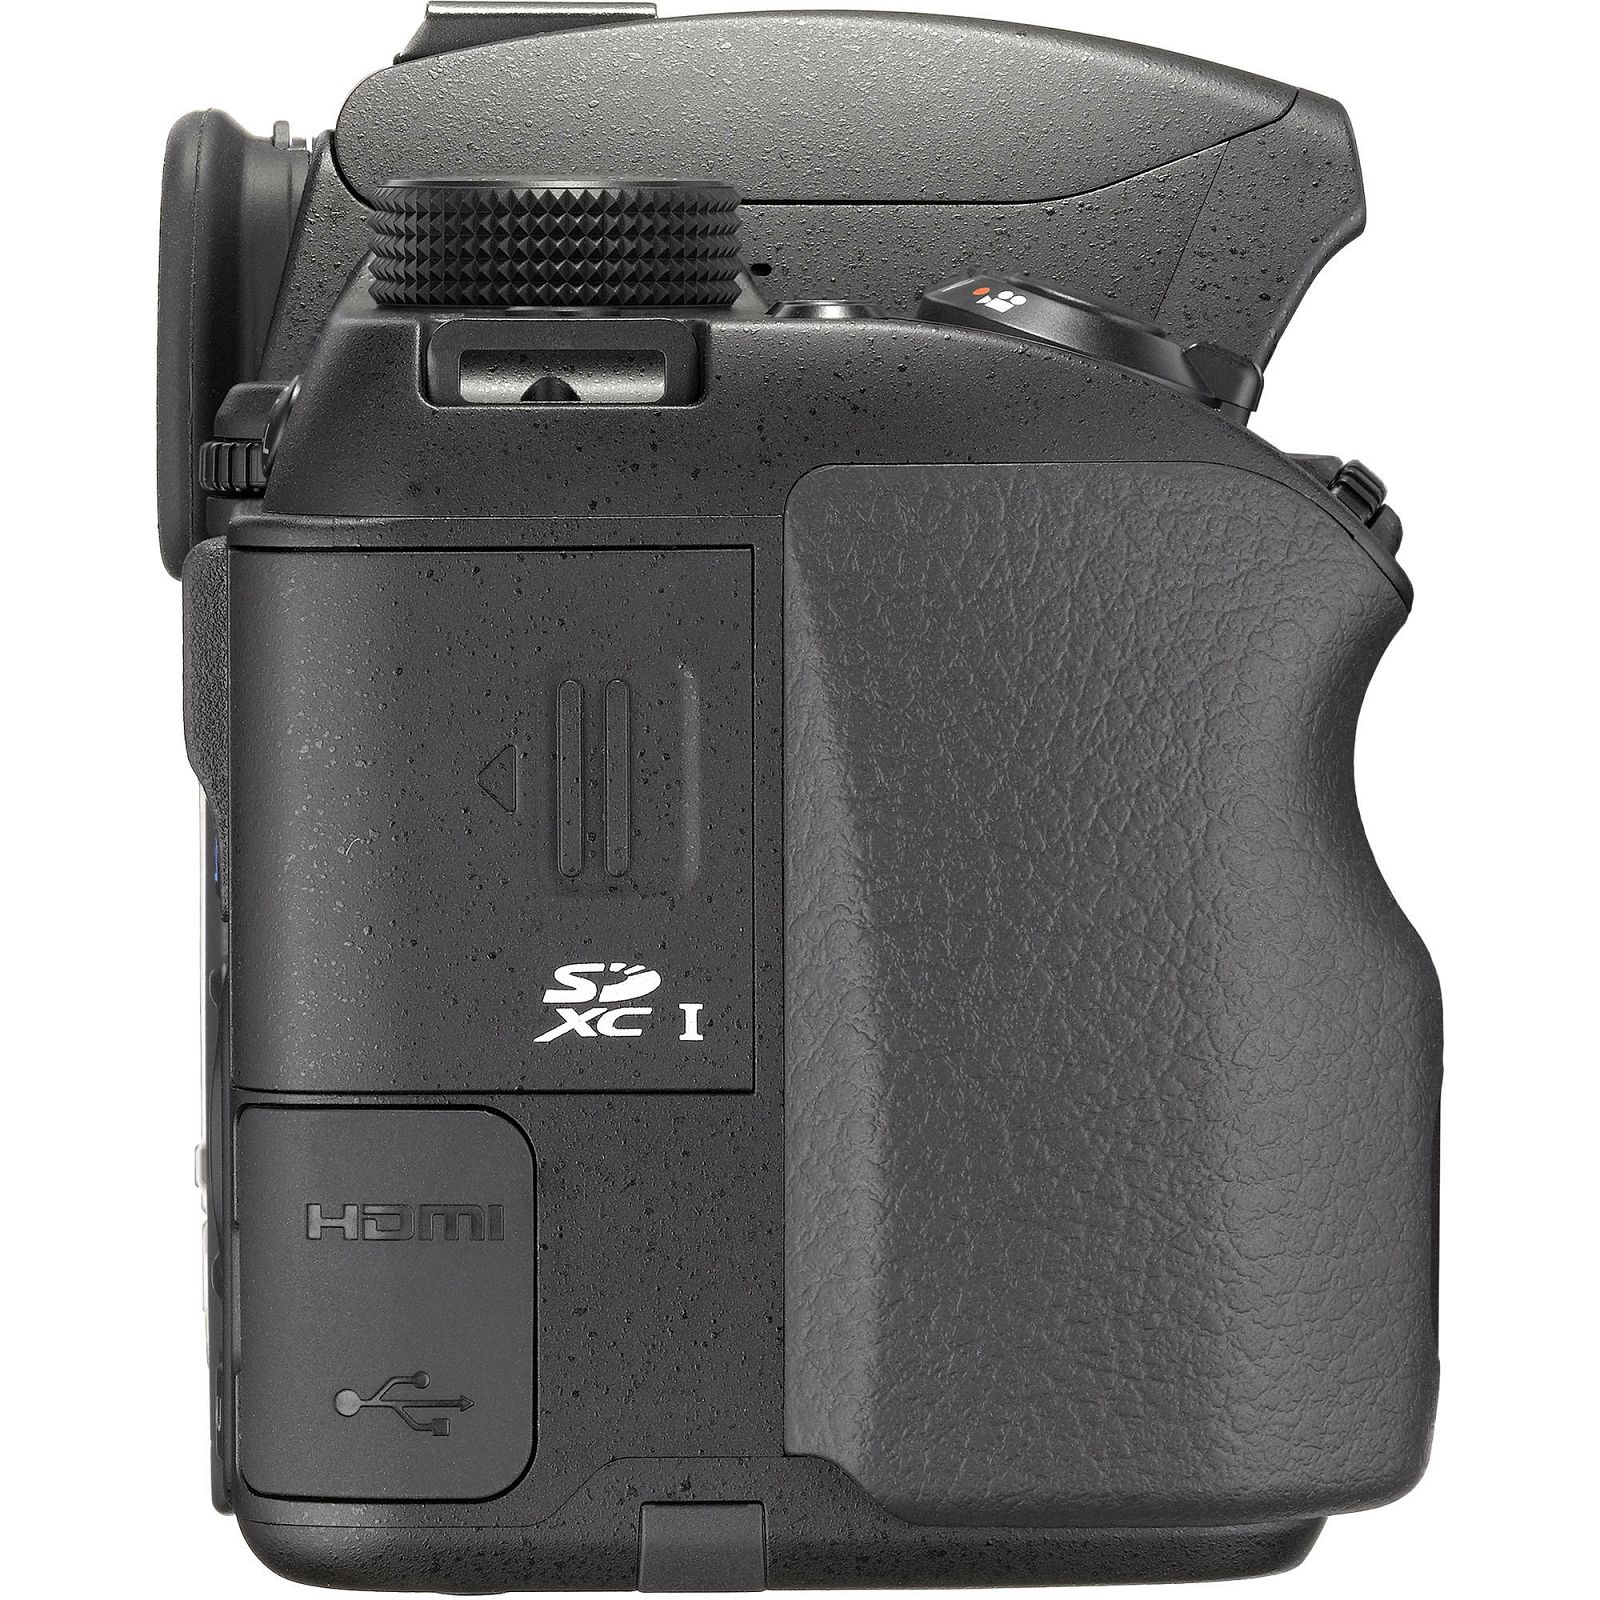 Pentax K-70 + 18-135mm f/3.5-5.6 ED AL (IF) DC WR Black KIT DSLR Crni Digitalni fotoaparat SMC DA 18-135WR 18-135 f3.5-5.6 3.5-5.6 (16255)